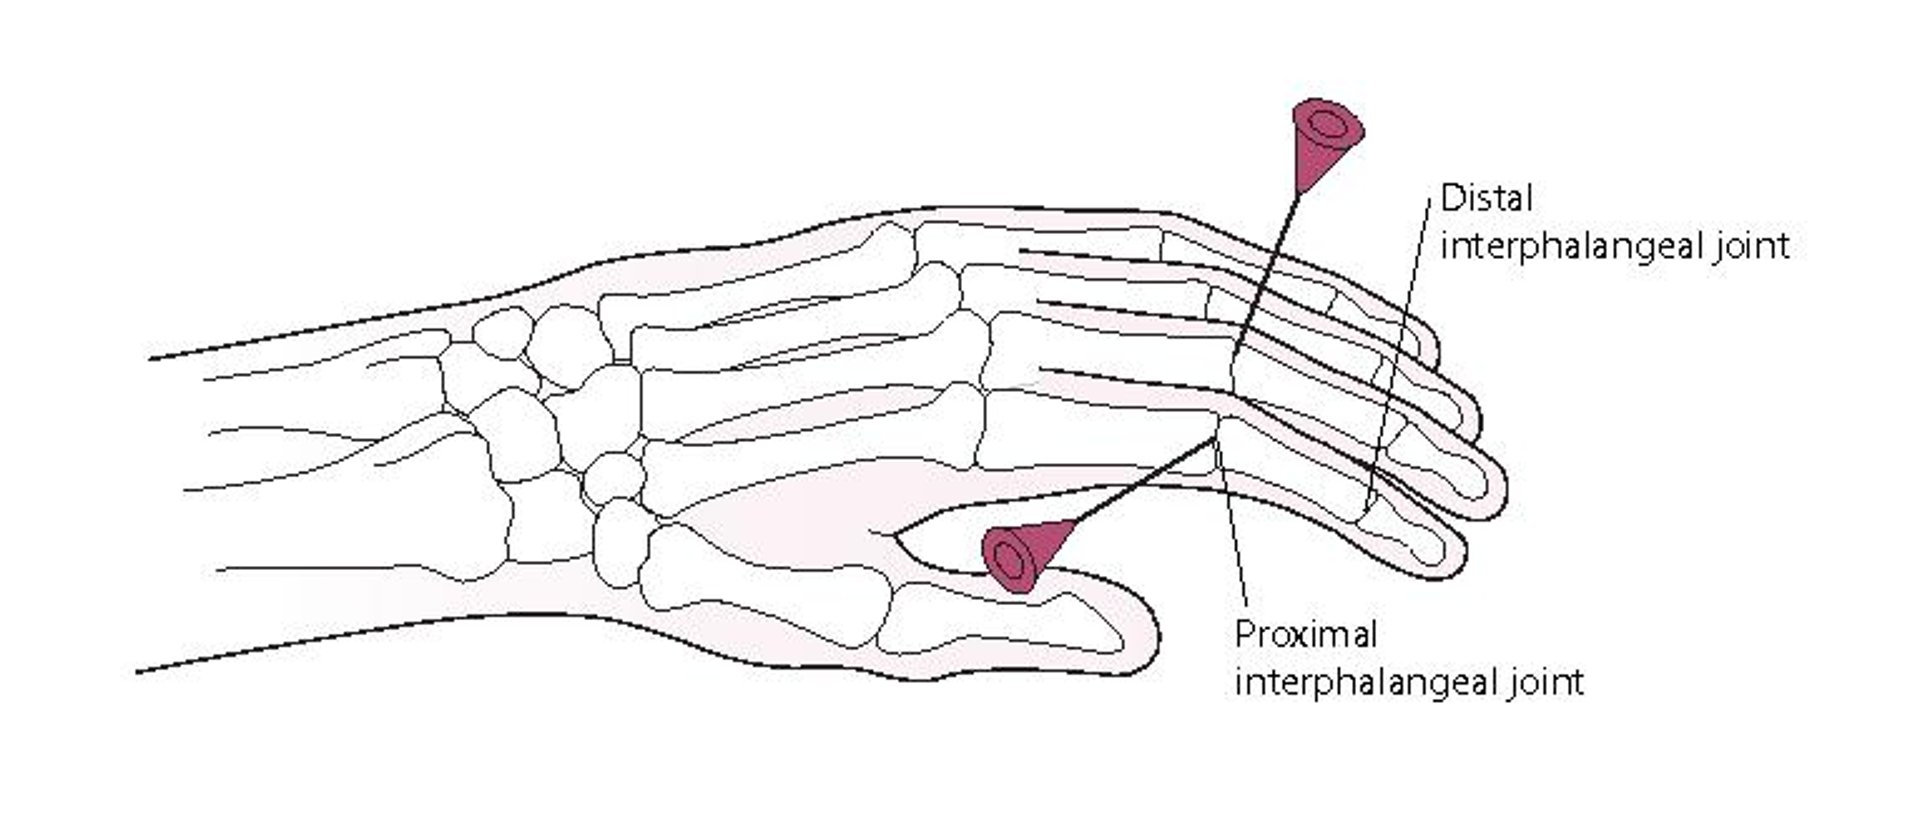 Artrocentese da articulação interfalângica proximal